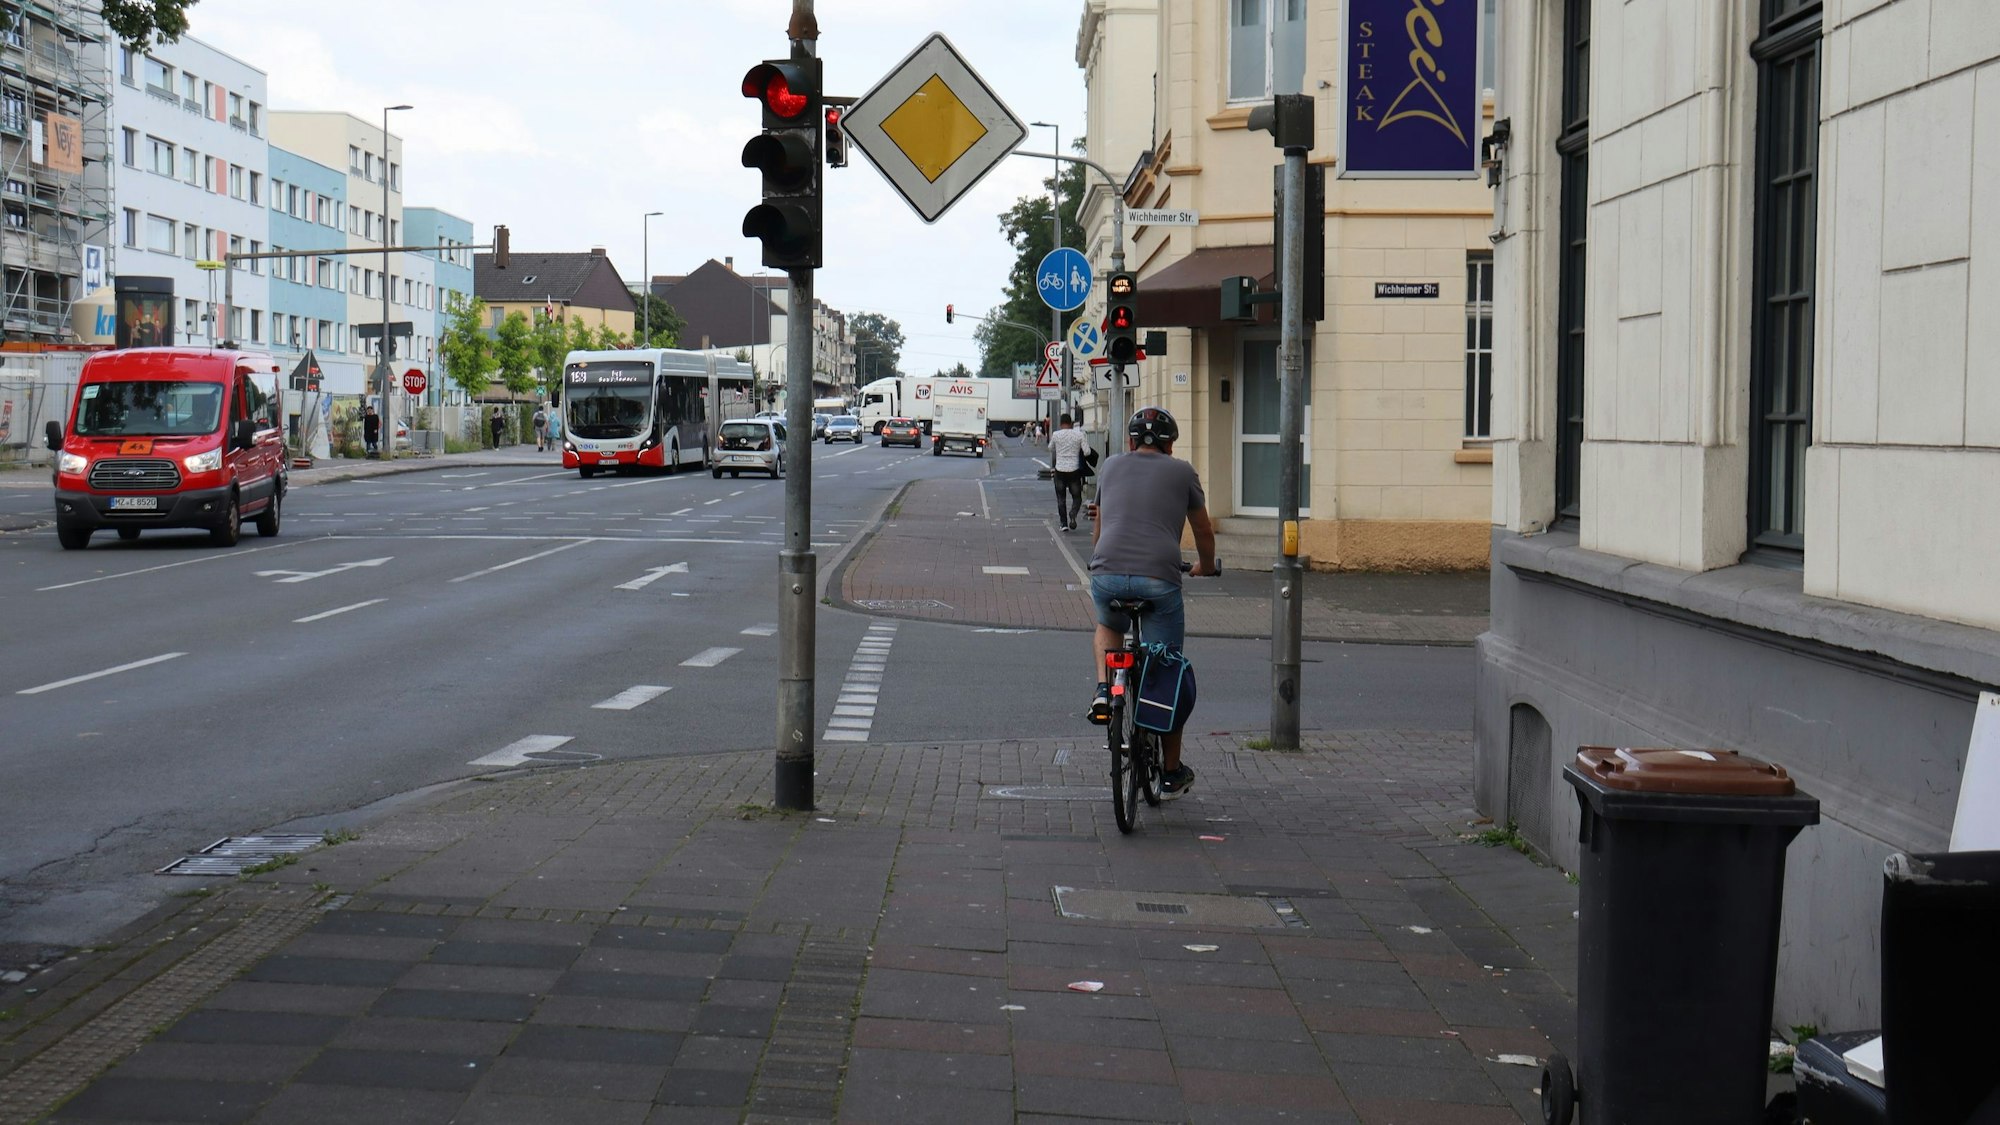 Eine mehrspurige Straße ist zu sehen, ein Radfahrer hält auf dem Bürgersteig an einer roten Ampel.